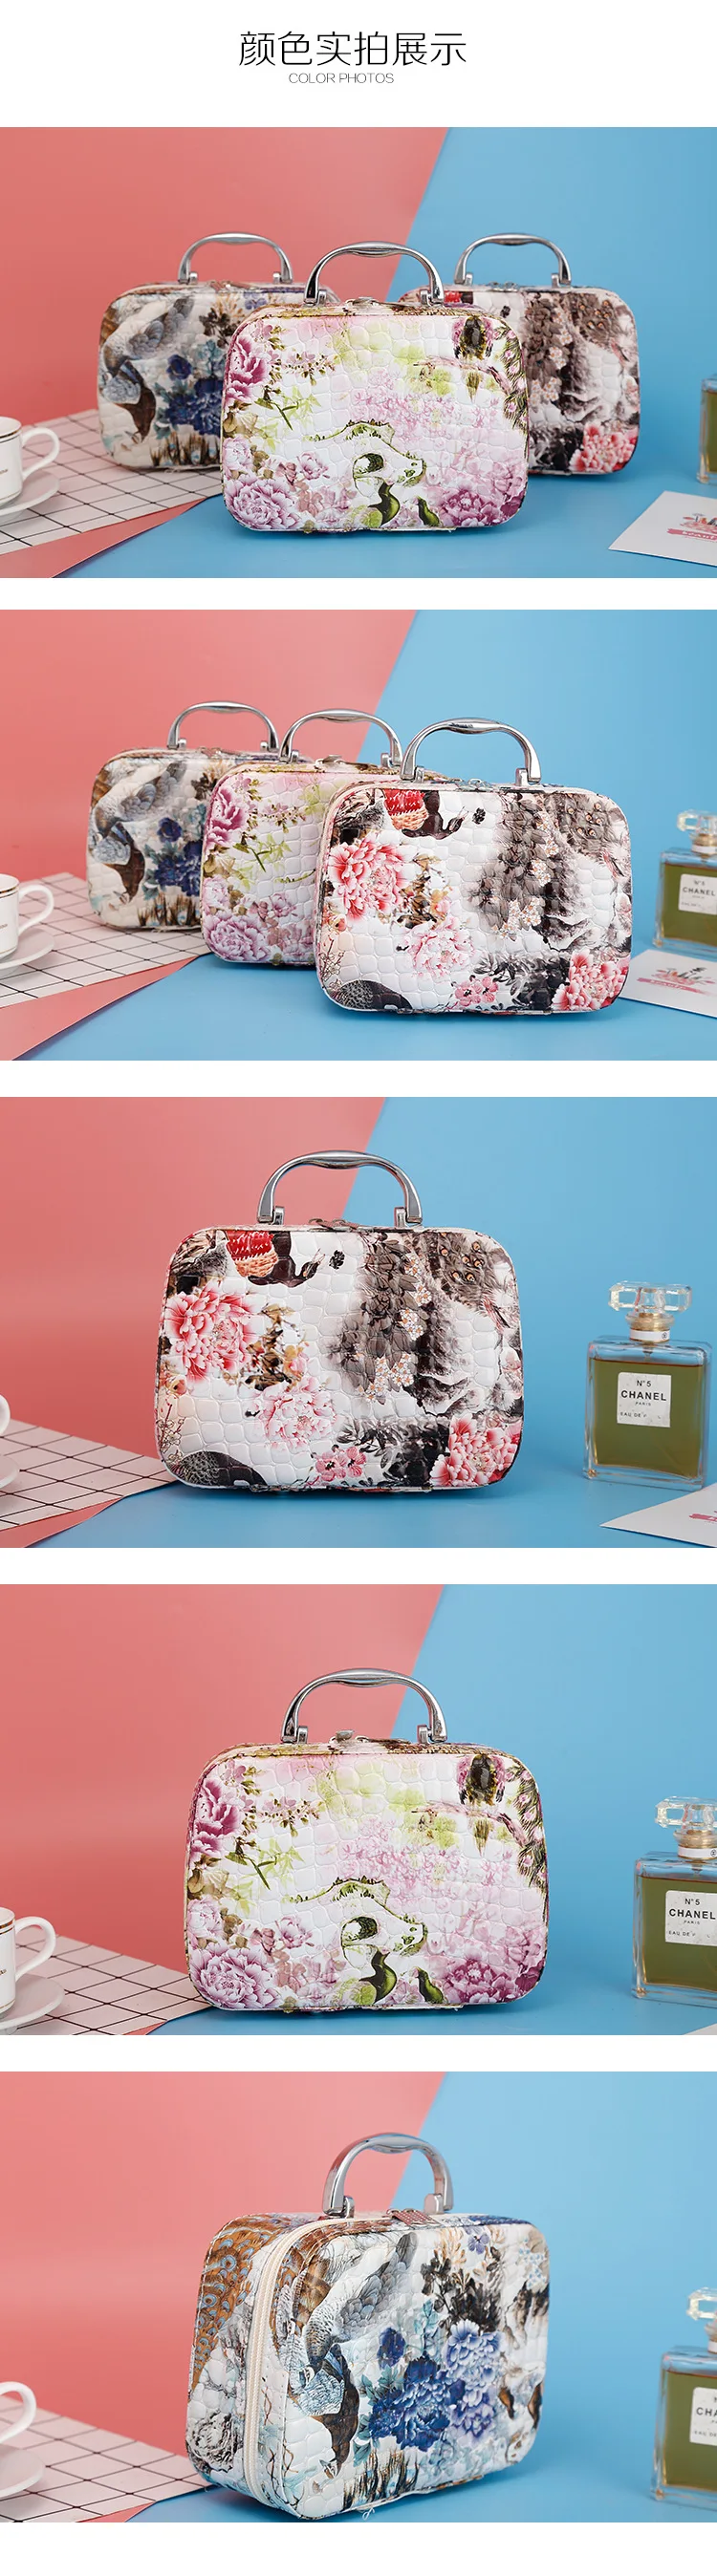 Косметичка напечатанная и портативная косметичка с разноцветным рисунком милые косметические сумки женская косметичка-40